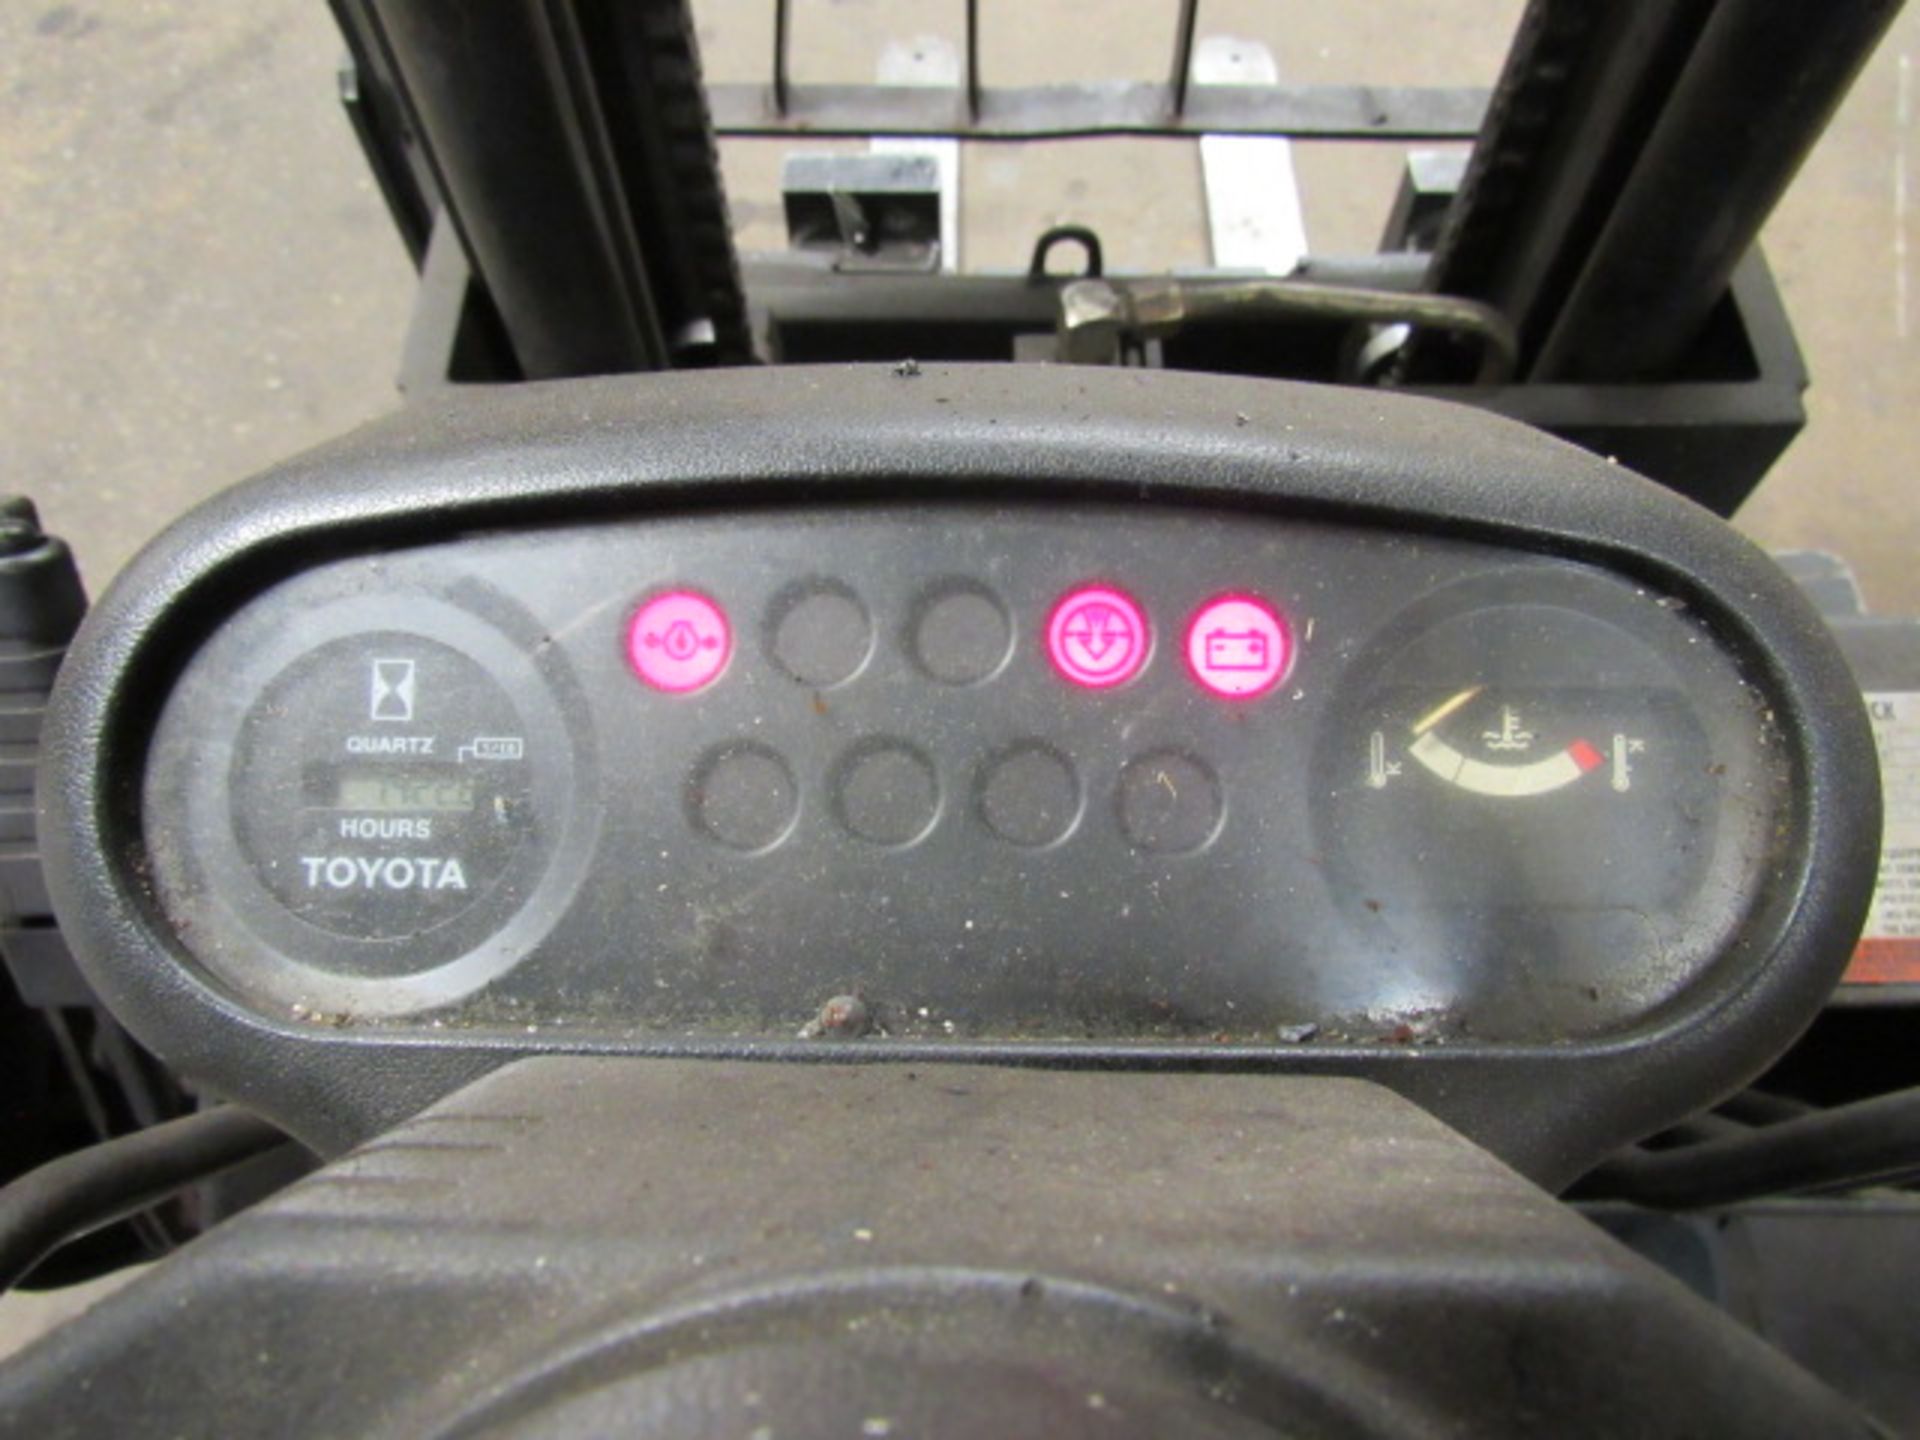 Toyota 426FGCU30 6,600 lb. Capacity LP Forklift - Image 5 of 7